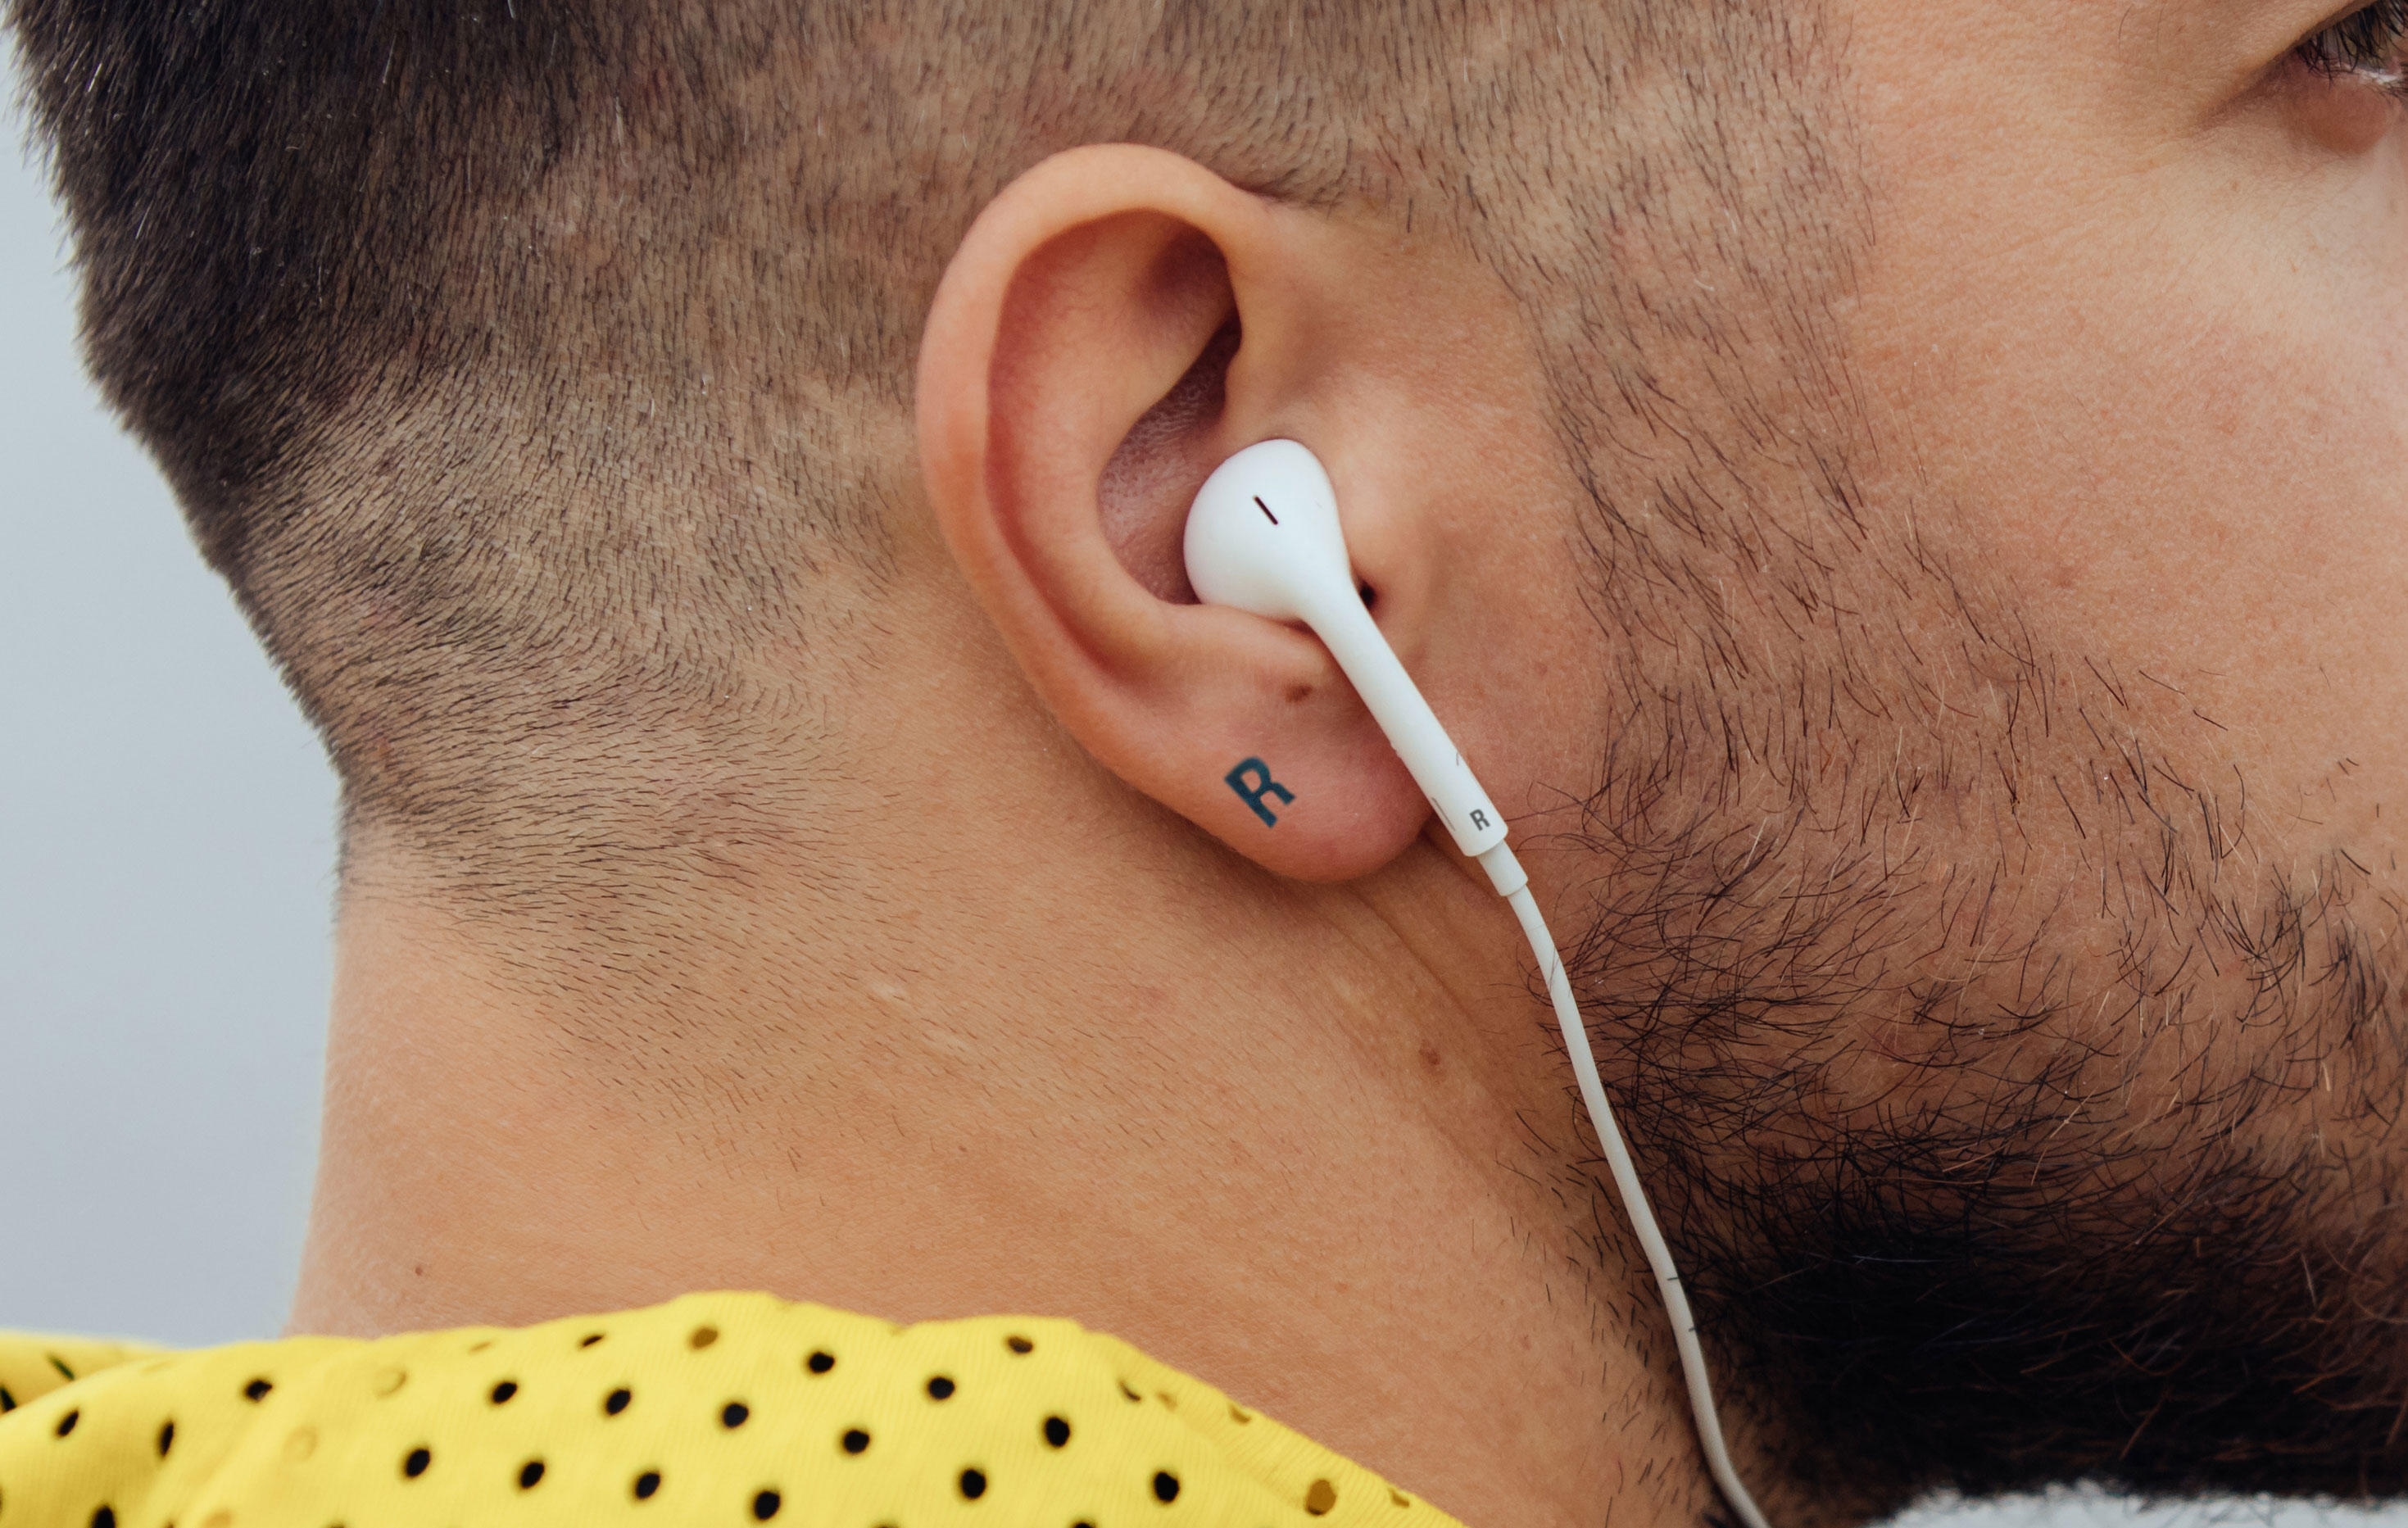 Parpadeo Listo Días laborables Se tatúa una L y una R en las orejas para saber dónde ponerse los  auriculares | El Mundo Today